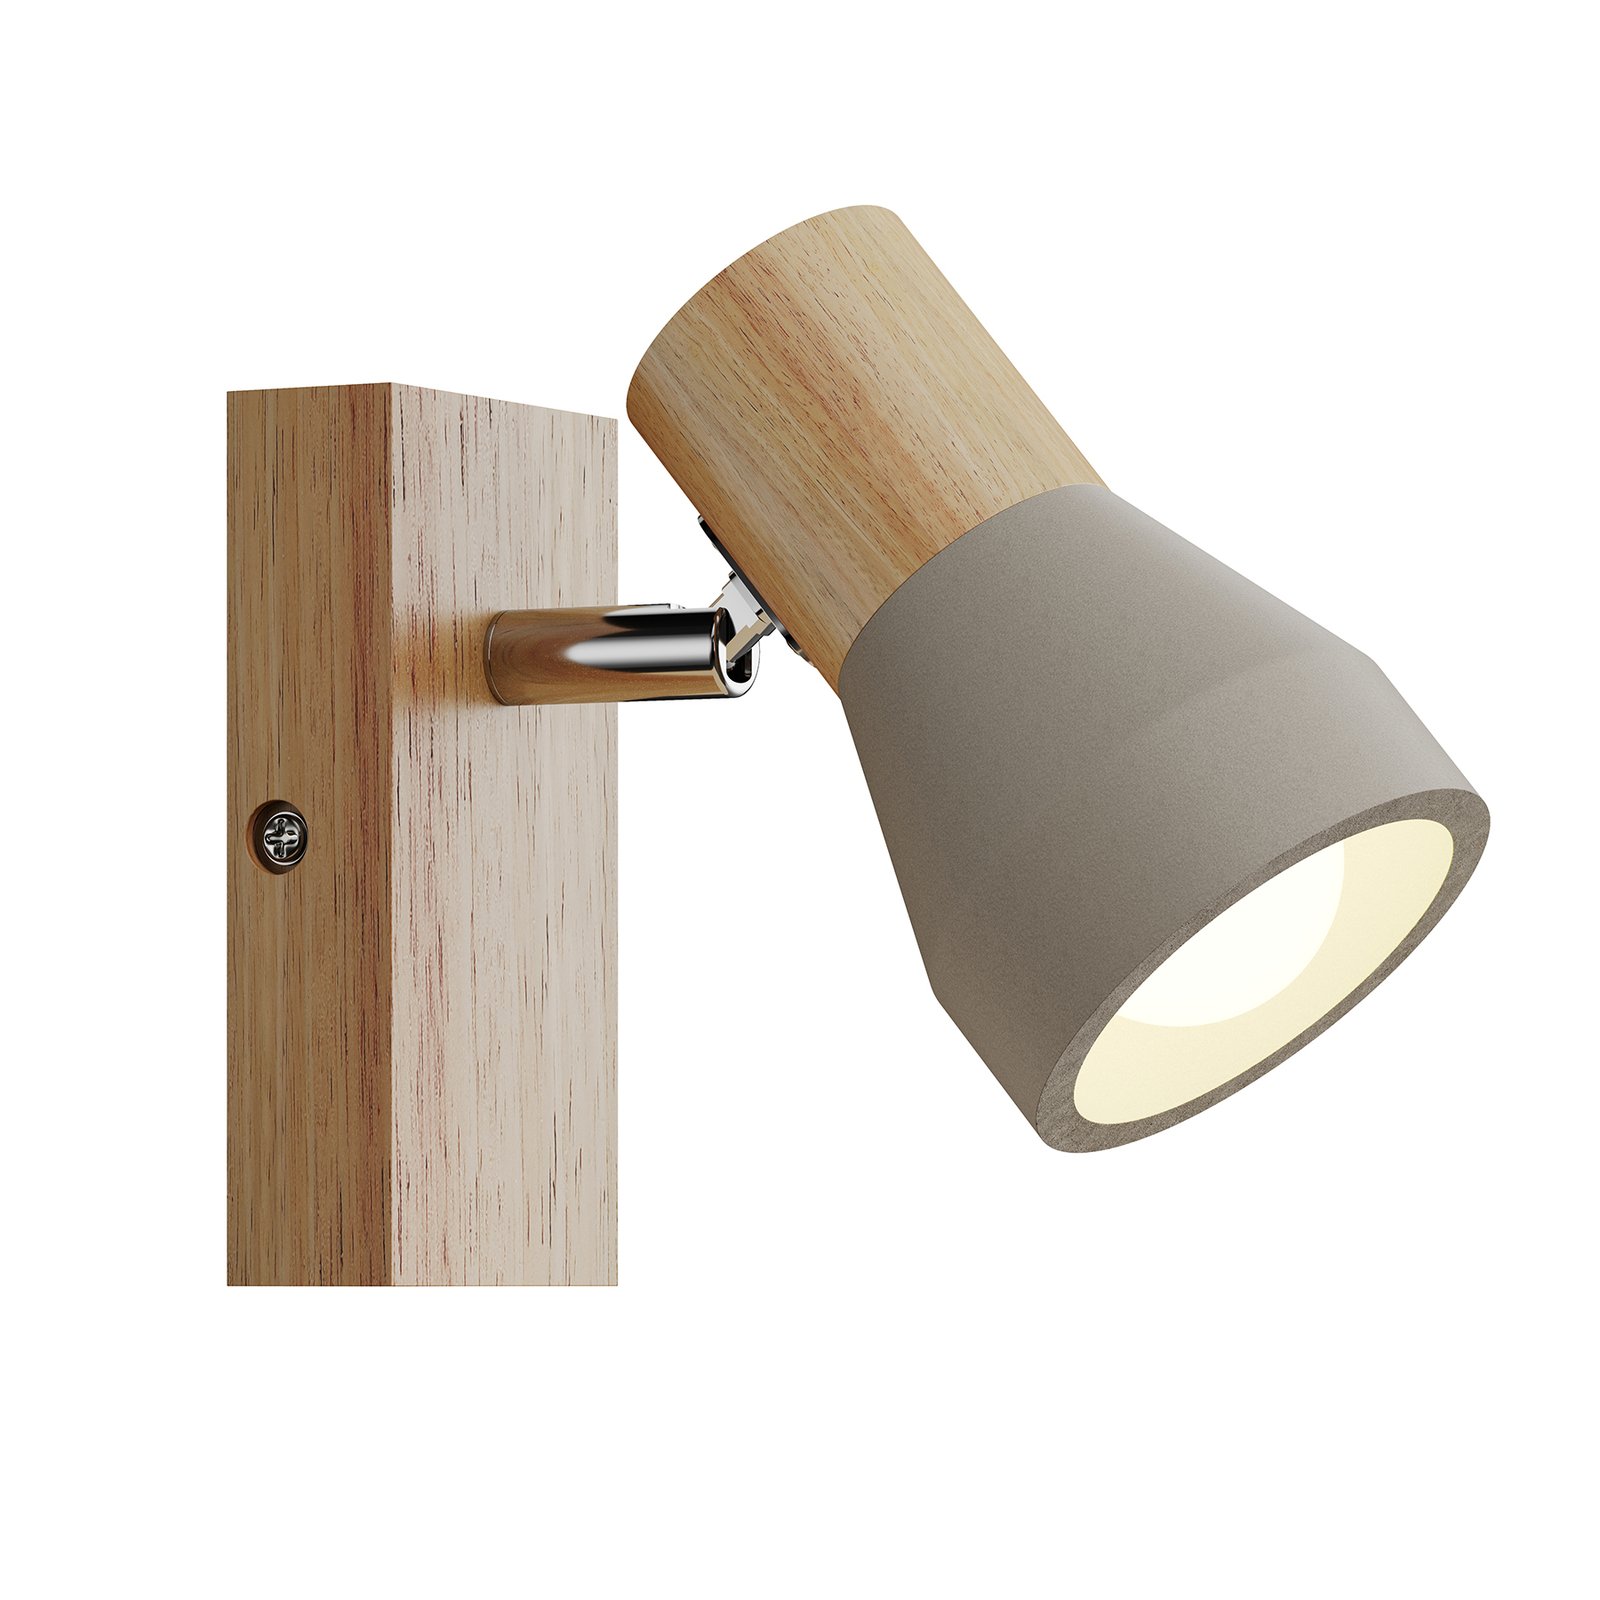 Filiz spotlight made of wood and concrete, 1-bulb